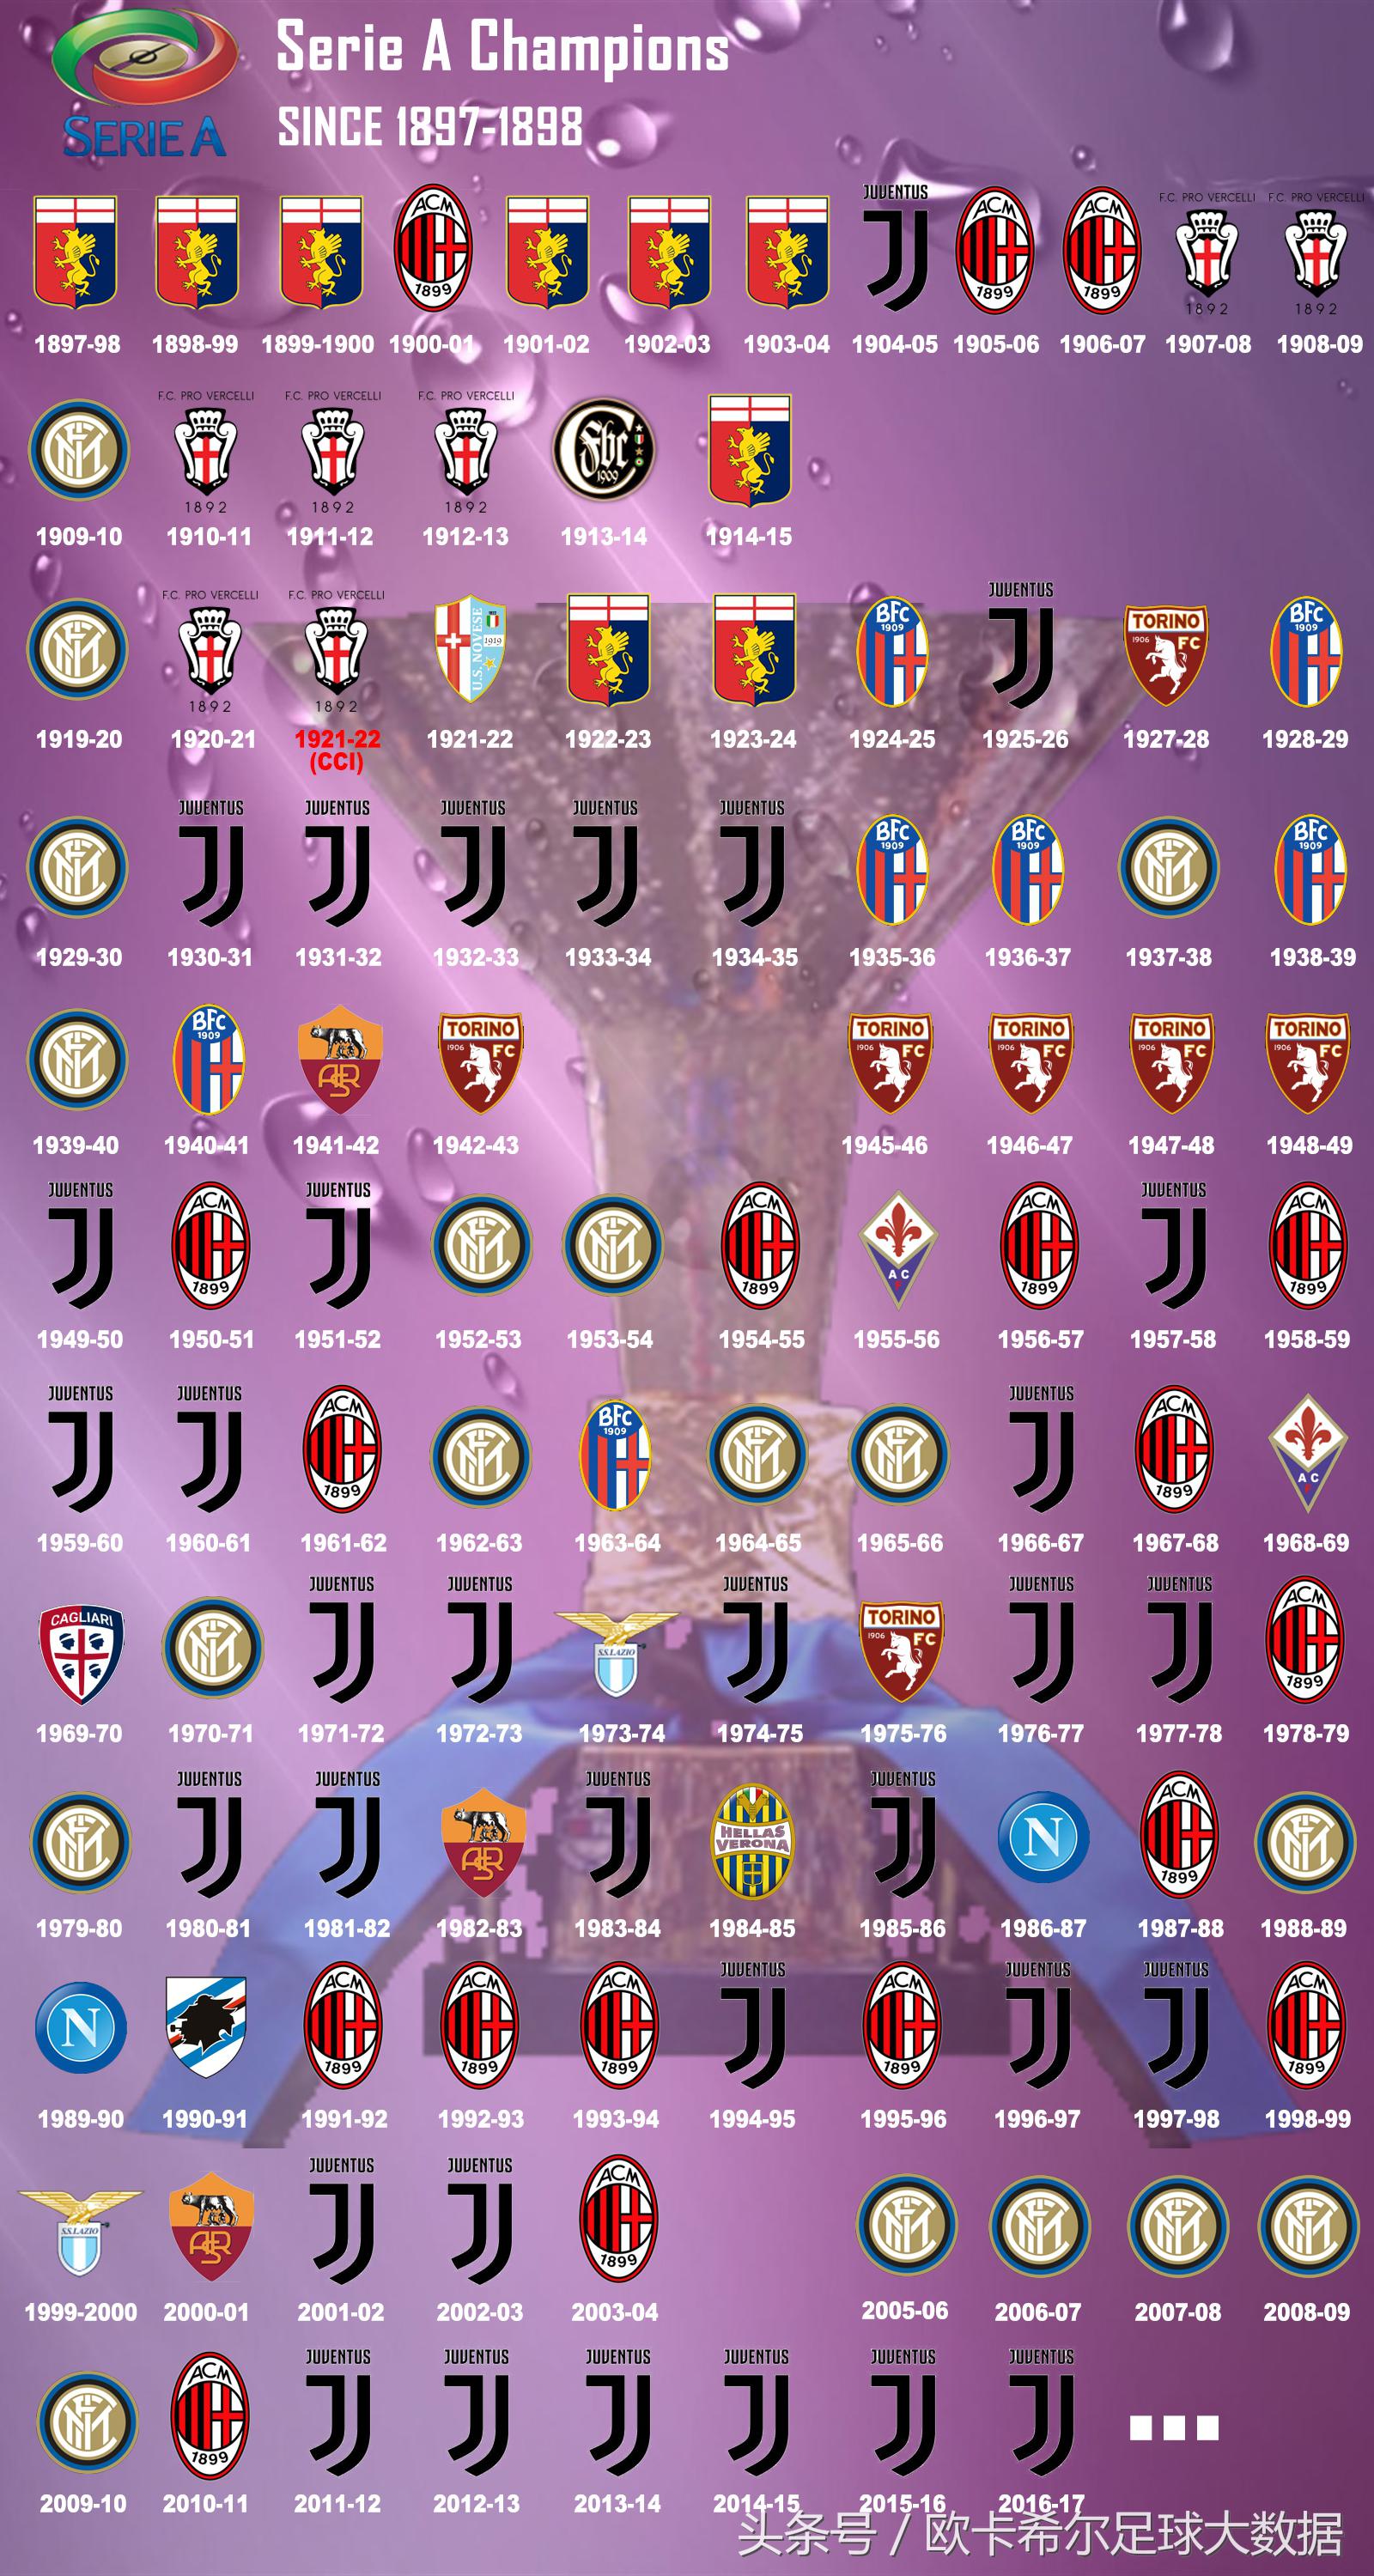 意甲联赛赛事图标 一张图看懂意甲联赛历年冠军(2)